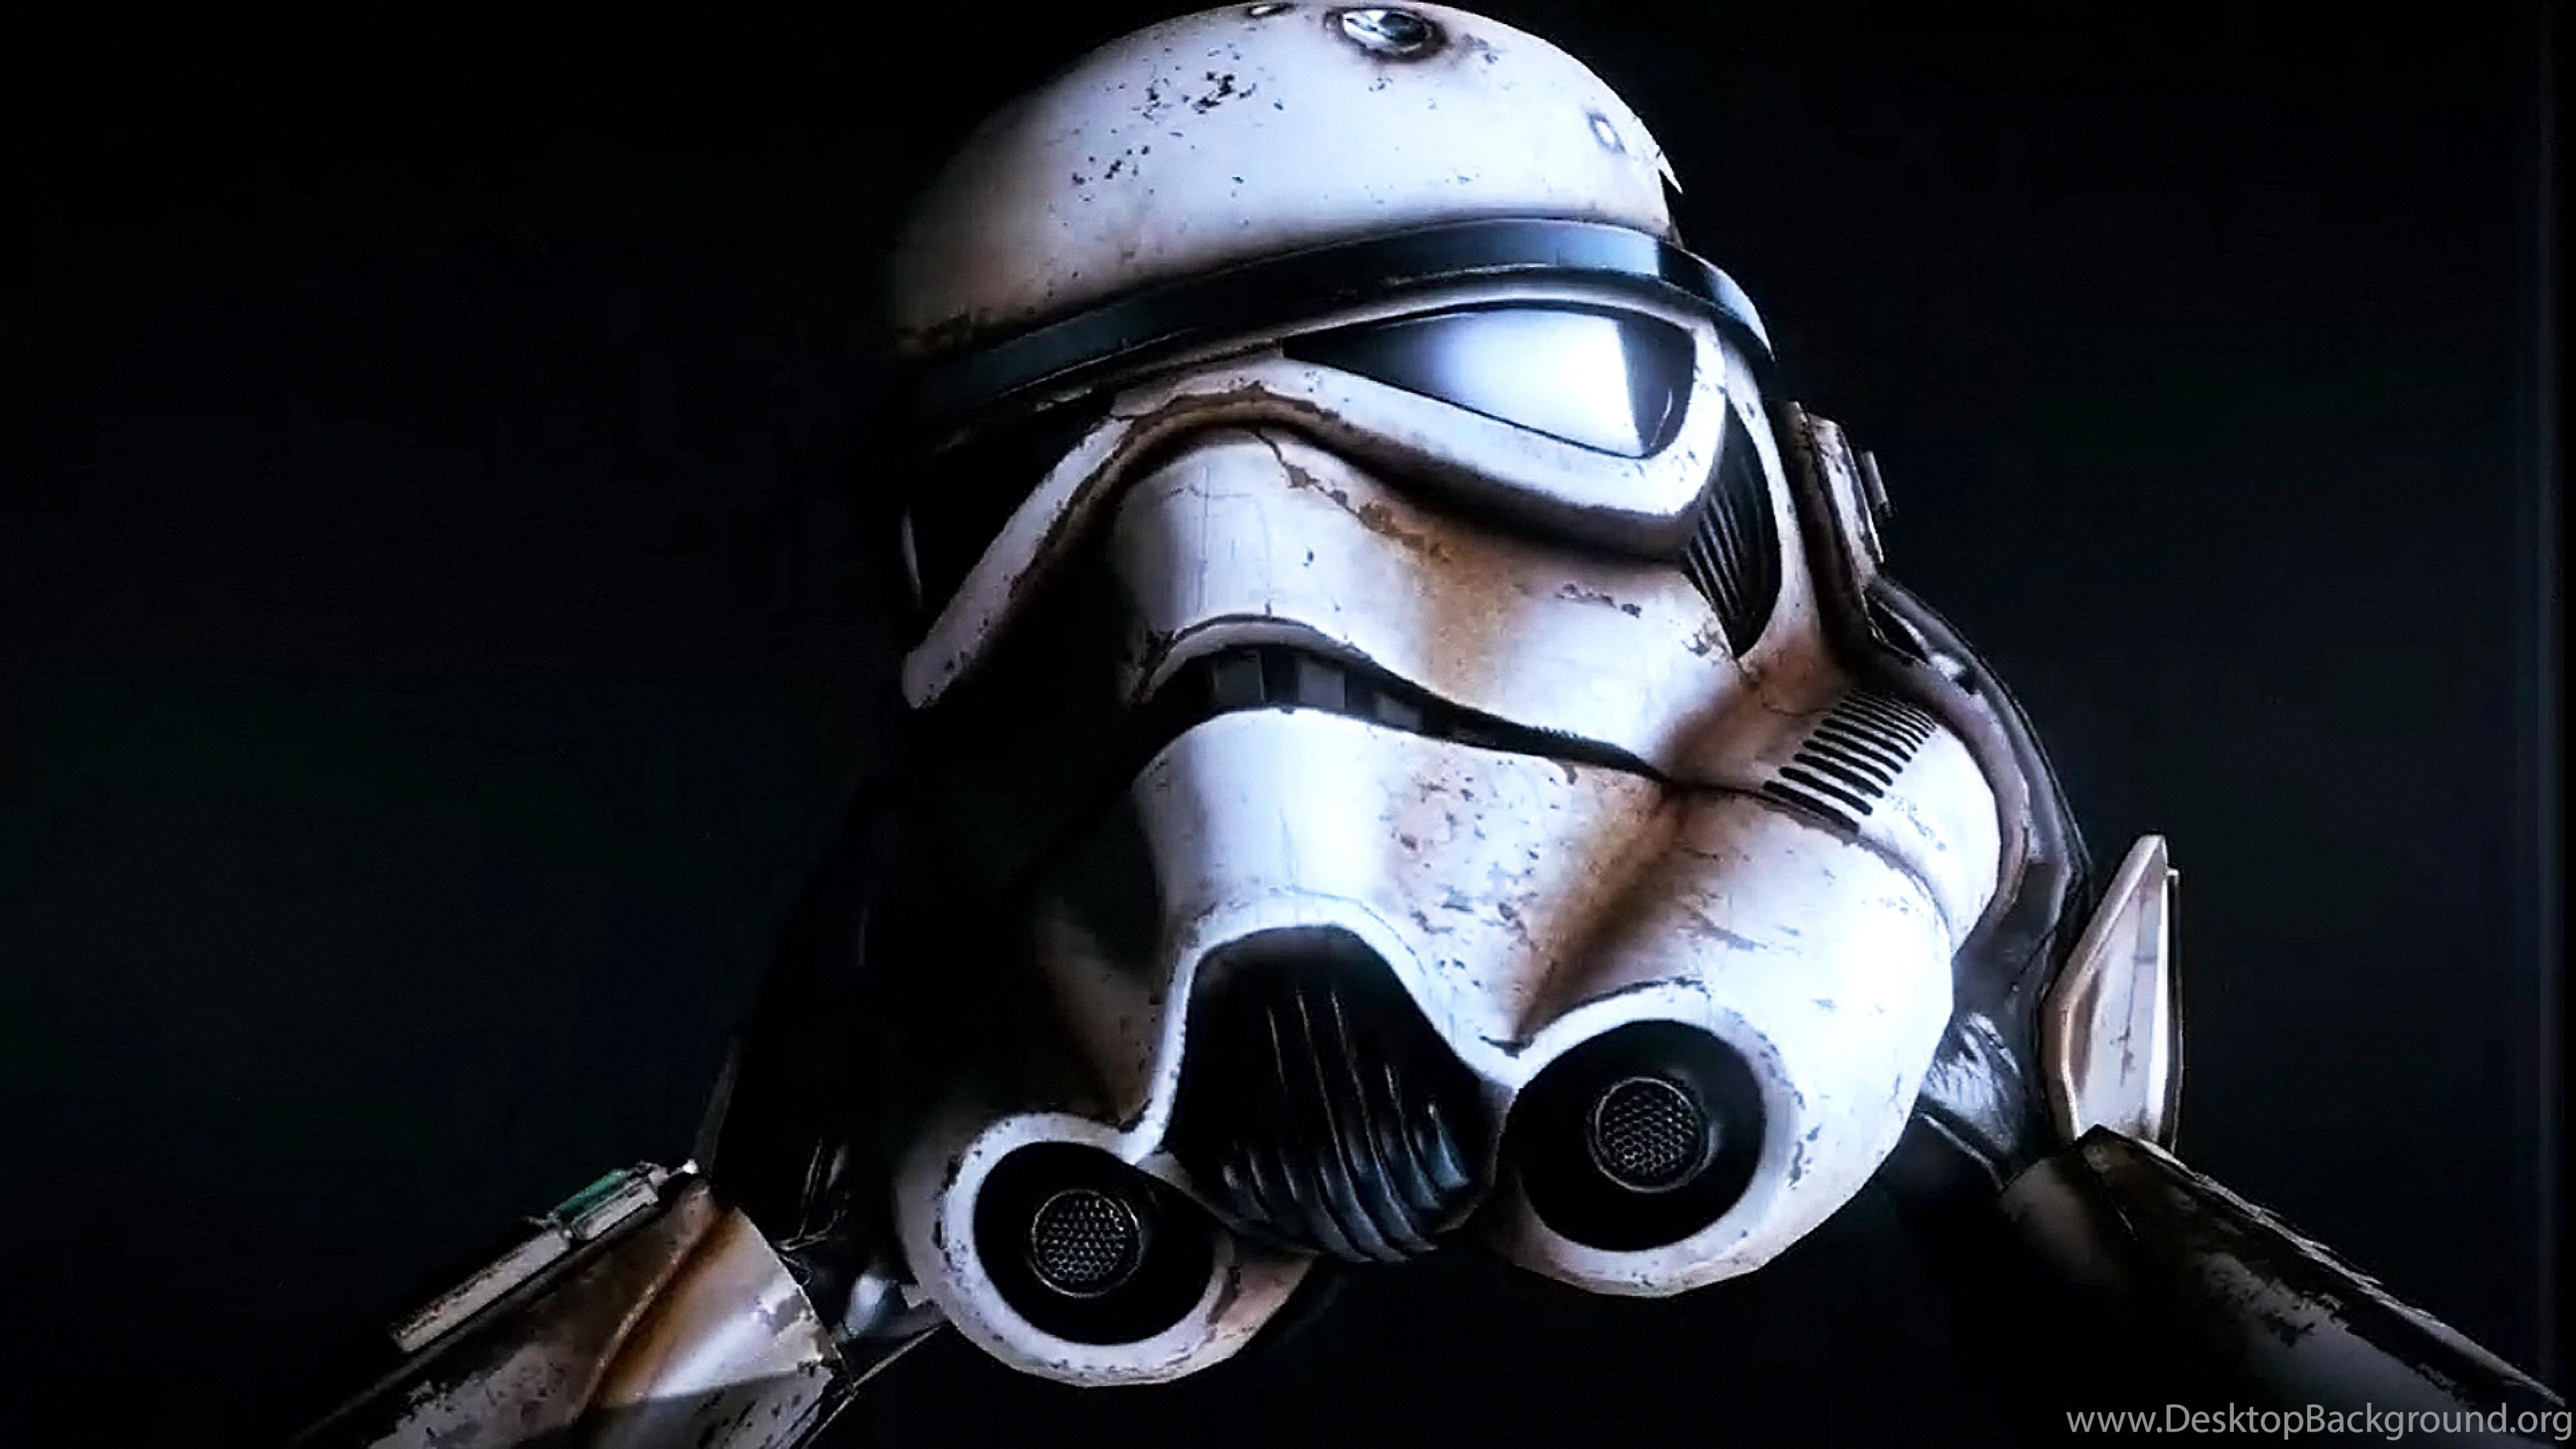 stormtrooper wallpaper hd,casco,equipaggiamento per la protezione personale,personaggio fittizio,spazio,action figure